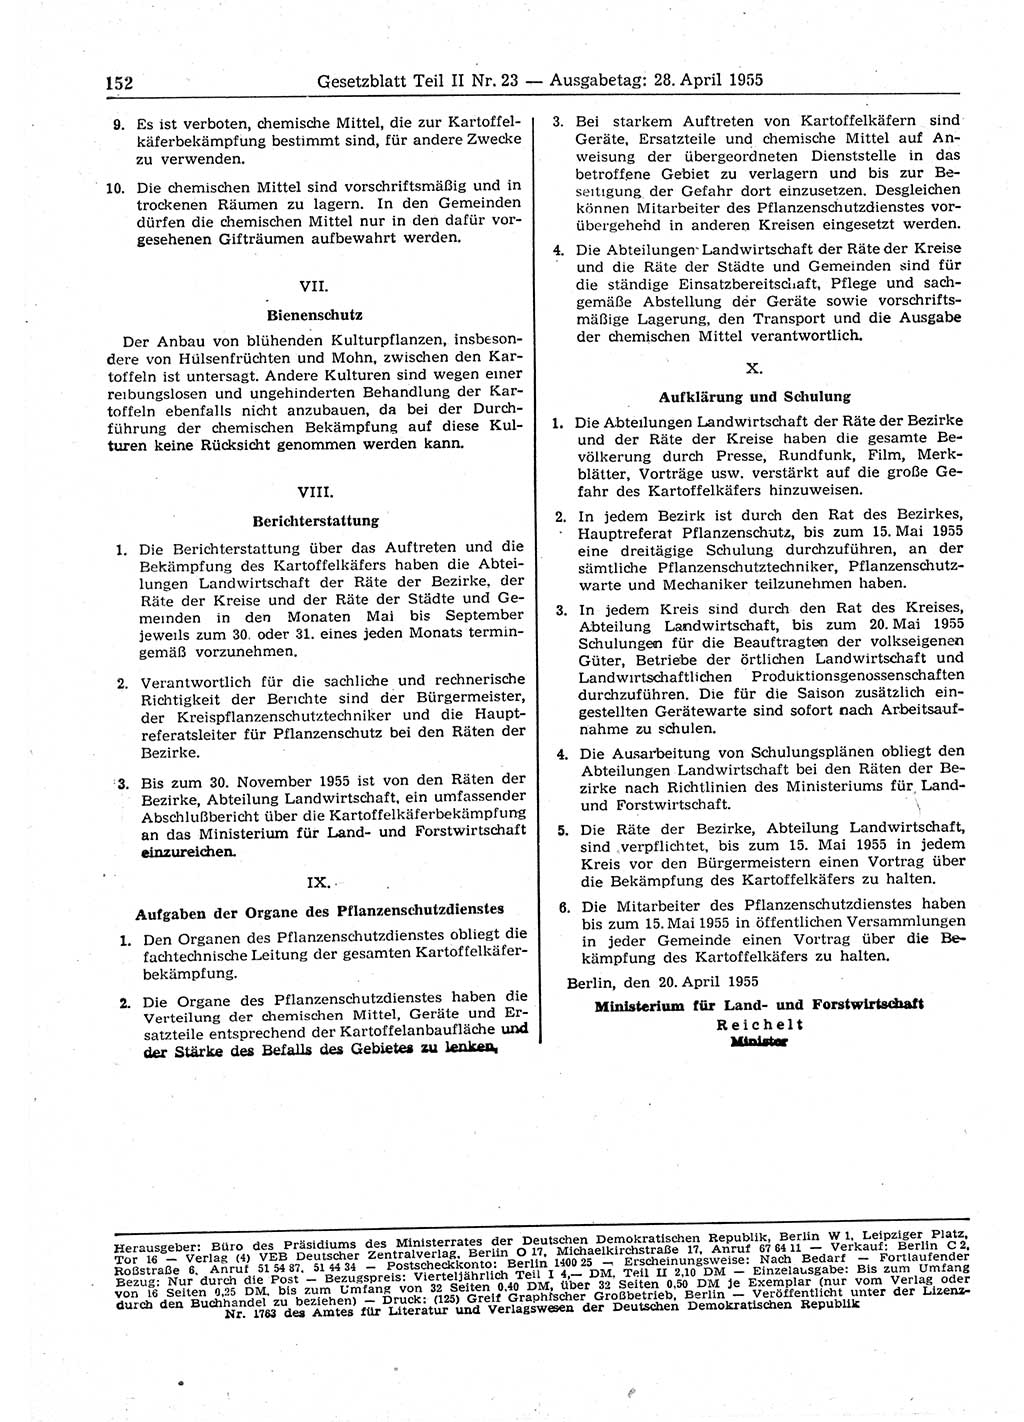 Gesetzblatt (GBl.) der Deutschen Demokratischen Republik (DDR) Teil ⅠⅠ 1955, Seite 152 (GBl. DDR ⅠⅠ 1955, S. 152)